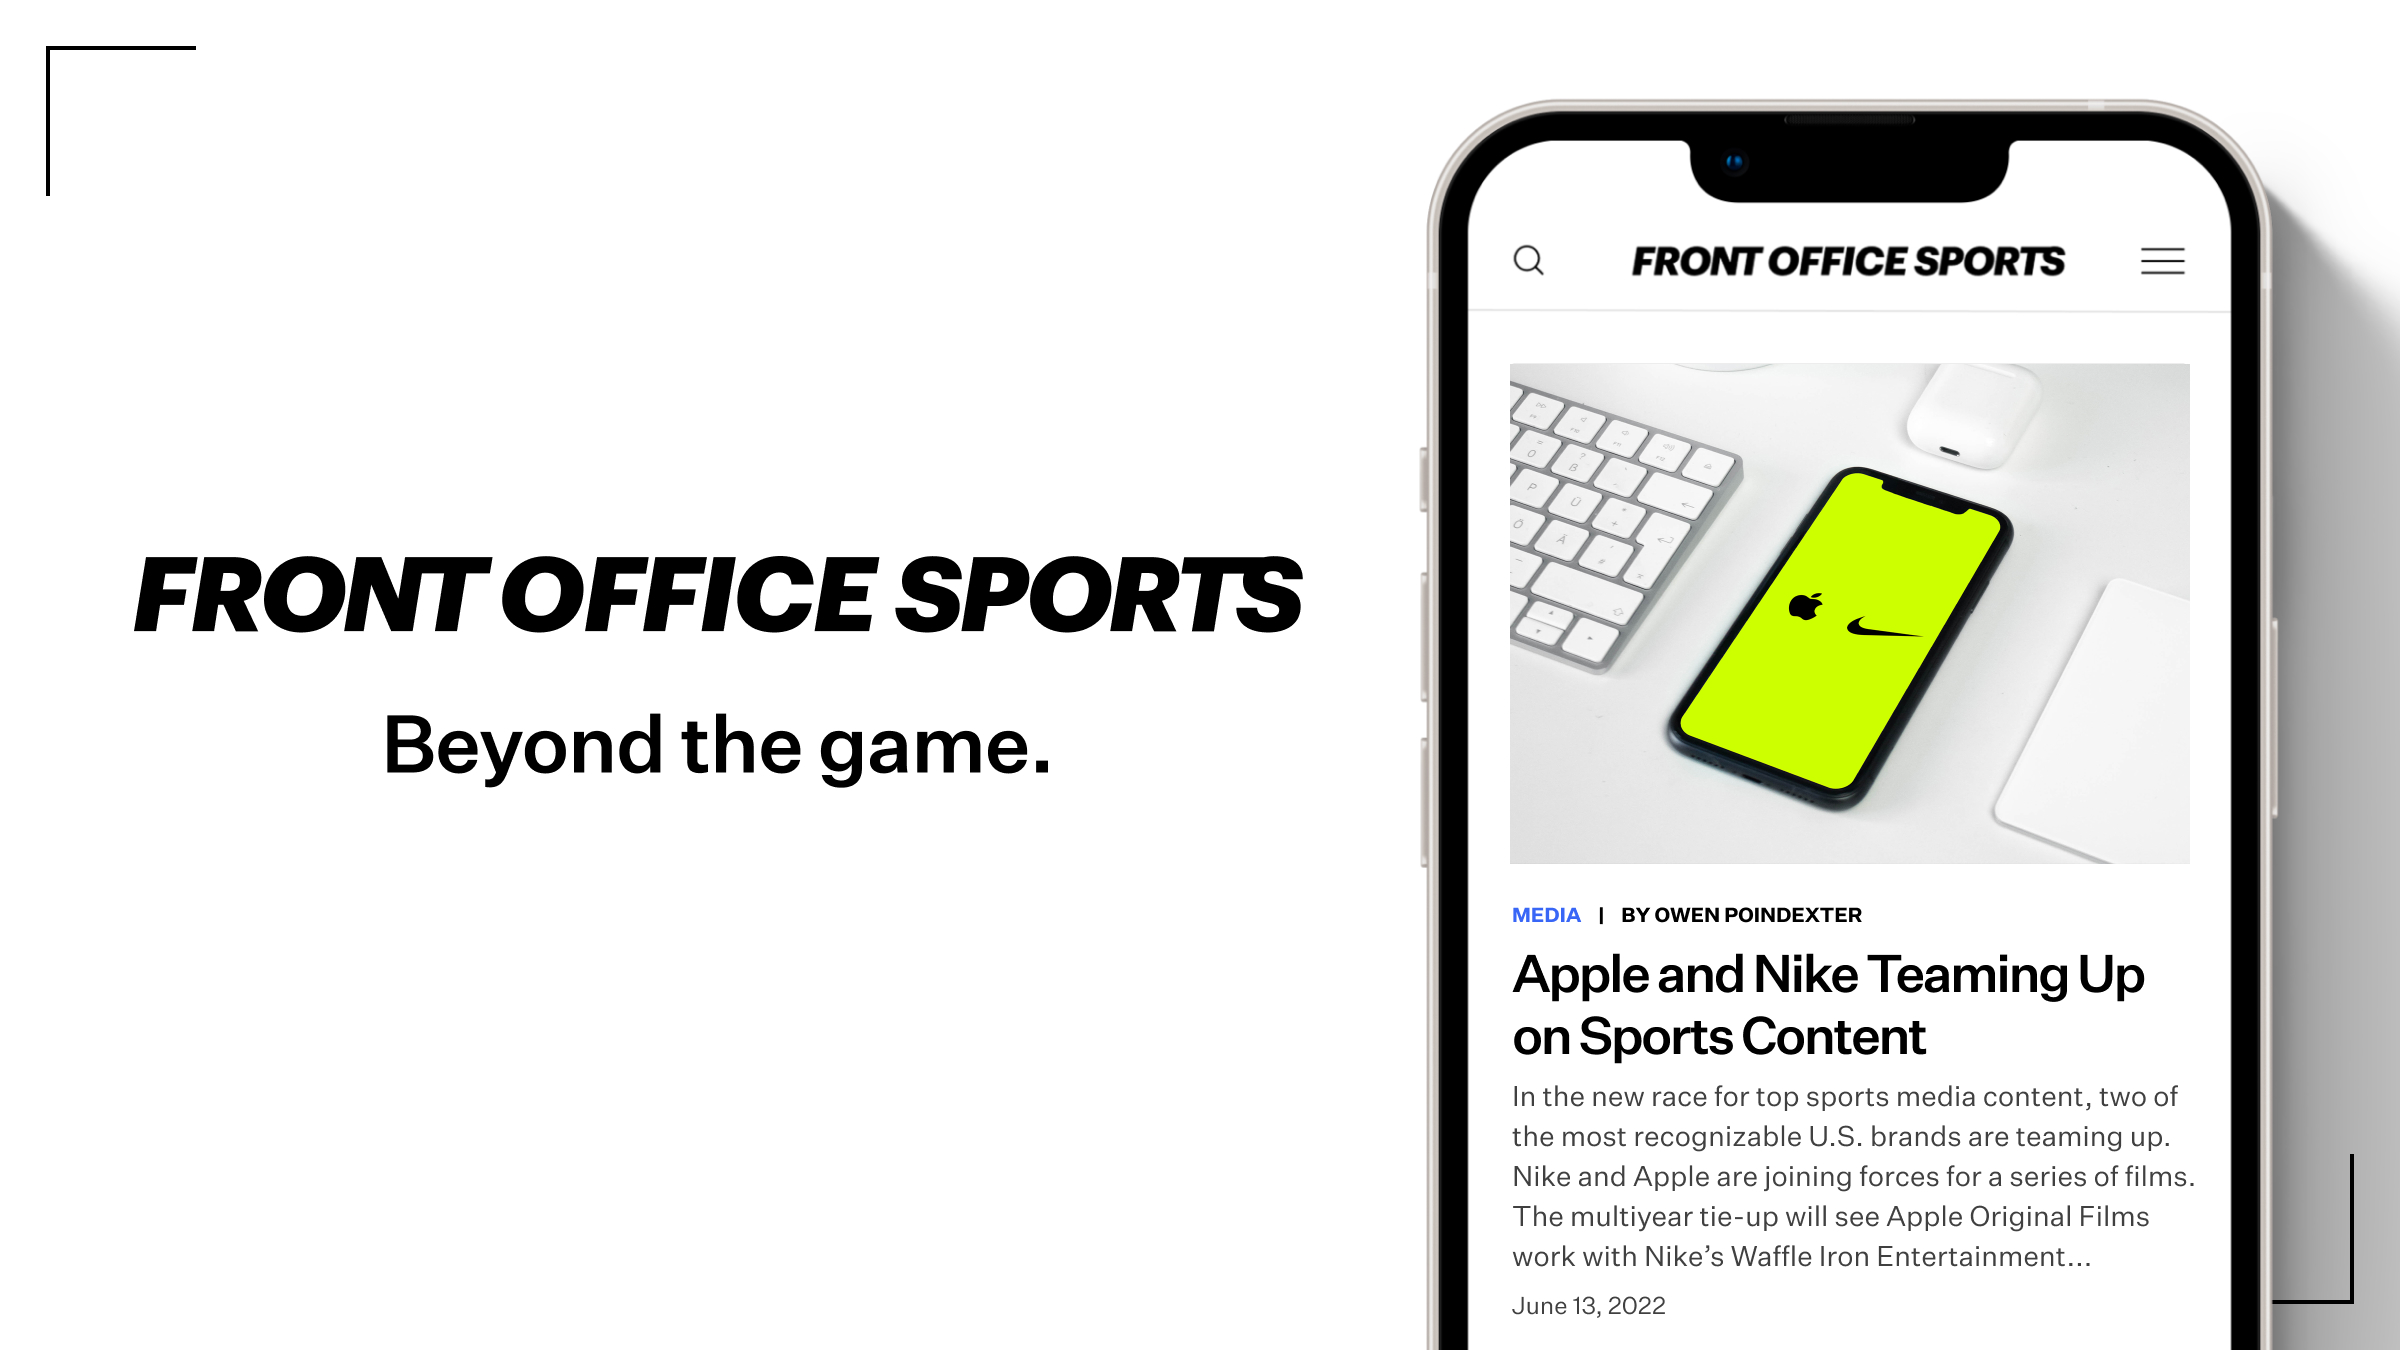 Thể thao văn phòng: Hình ảnh liên quan đến thể thao văn phòng sẽ giúp bạn khỏe mạnh hơn và tăng cường năng suất làm việc. Bạn sẽ tìm thấy những động tác đơn giản để tập thể dục trong không gian làm việc của mình.